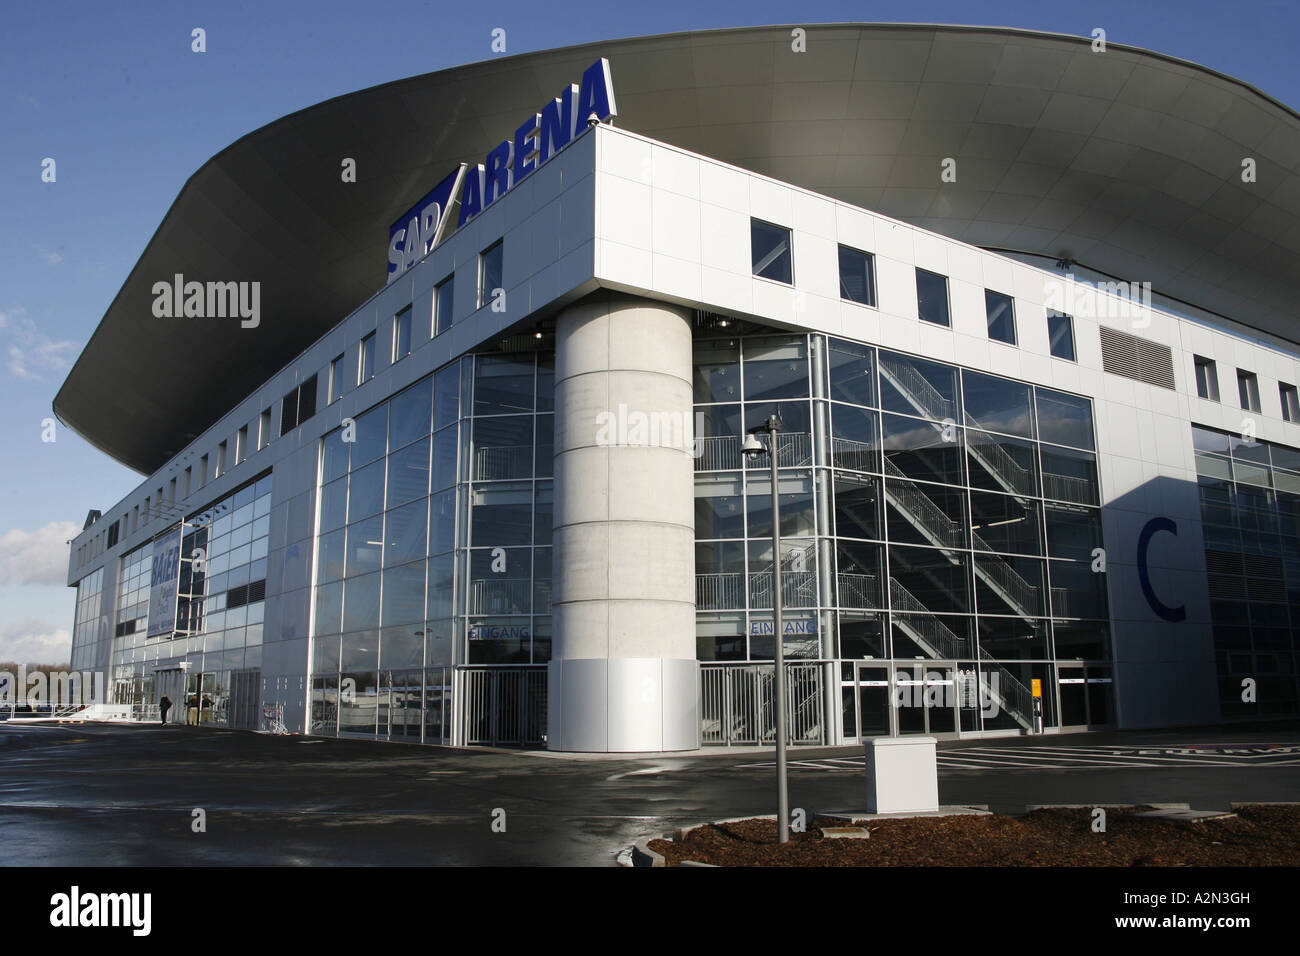 Stadion in Stadt, SAP Arena, Mannheim, Deutschland Stockfoto